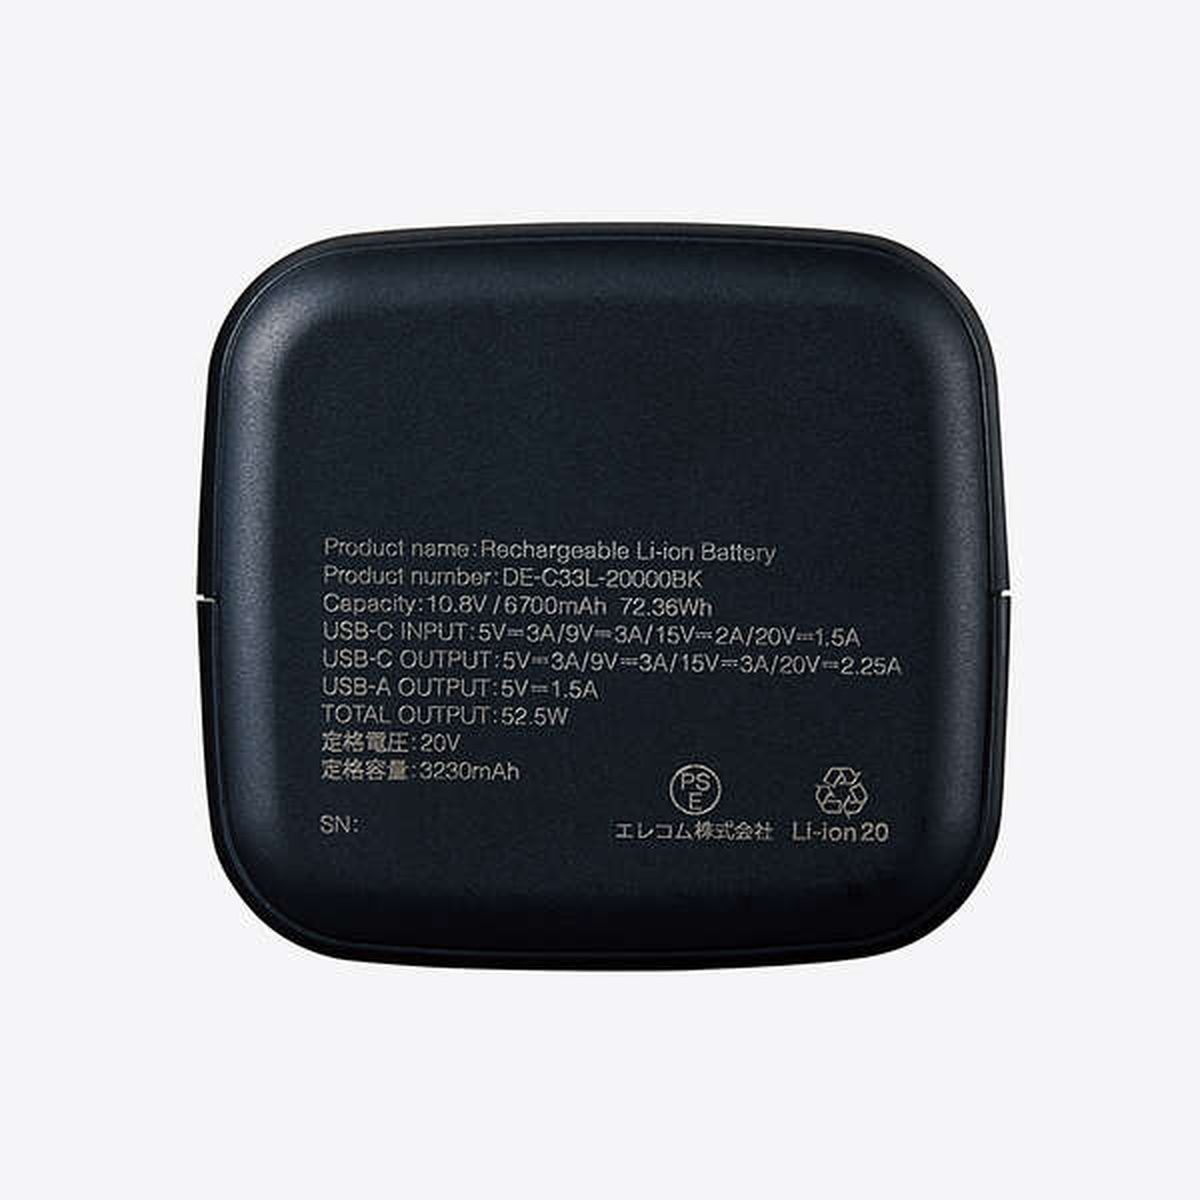 モバイルバッテリー/USB Power Delivery認証/20100mAh/52.5W/USB-C 1ポート/USB-A 1ポート/ブラック